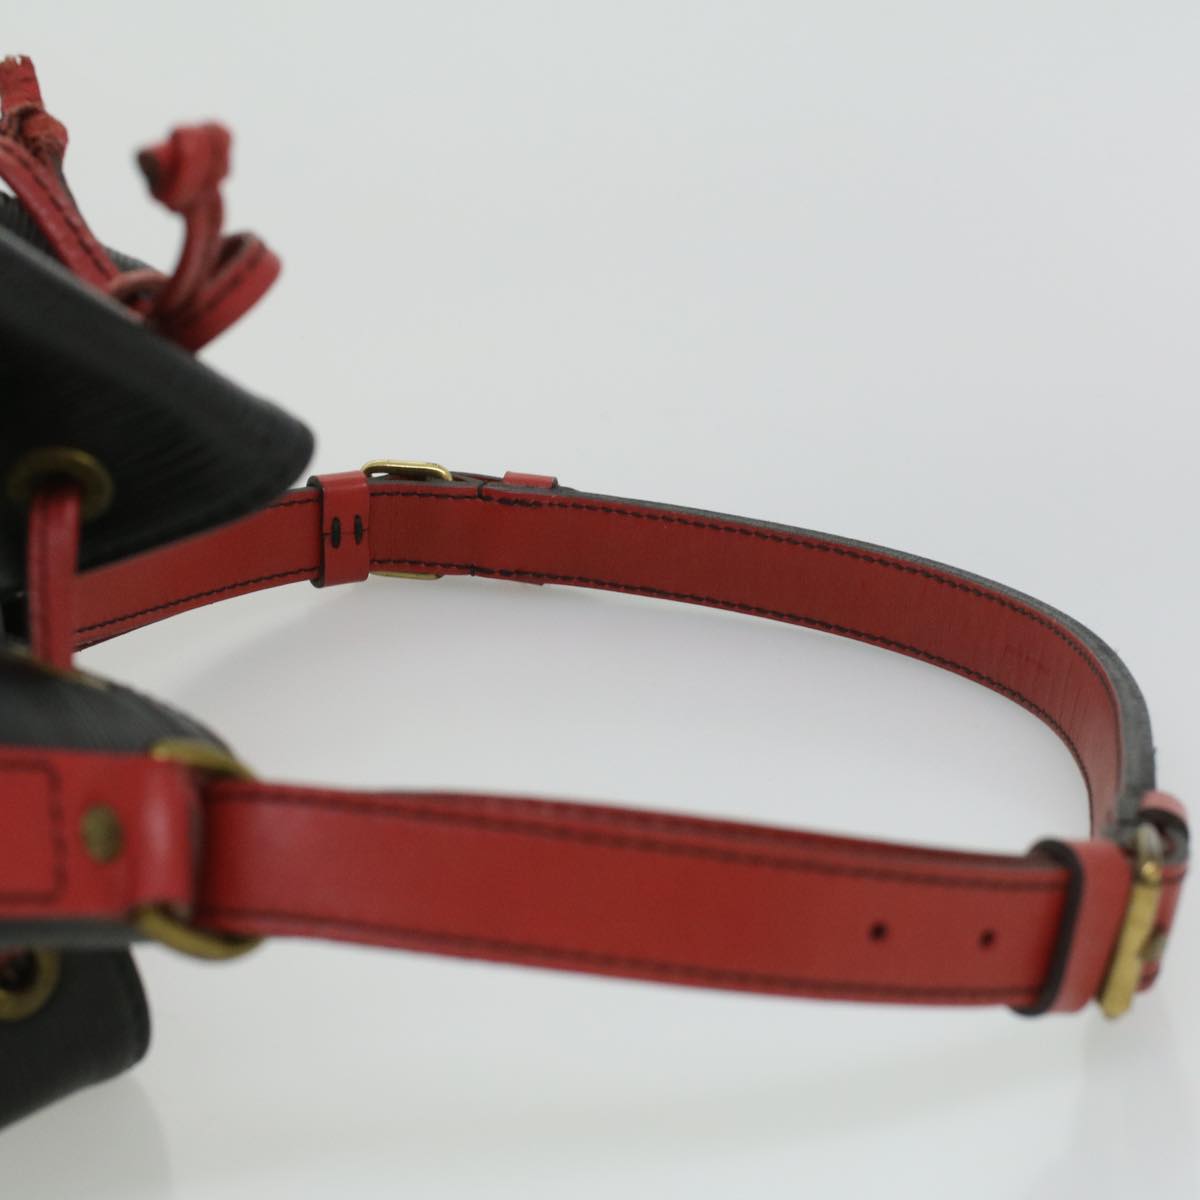 LOUIS VUITTON Epi By color Noe Shoulder Bag Black Red M44017 LV Auth 33205